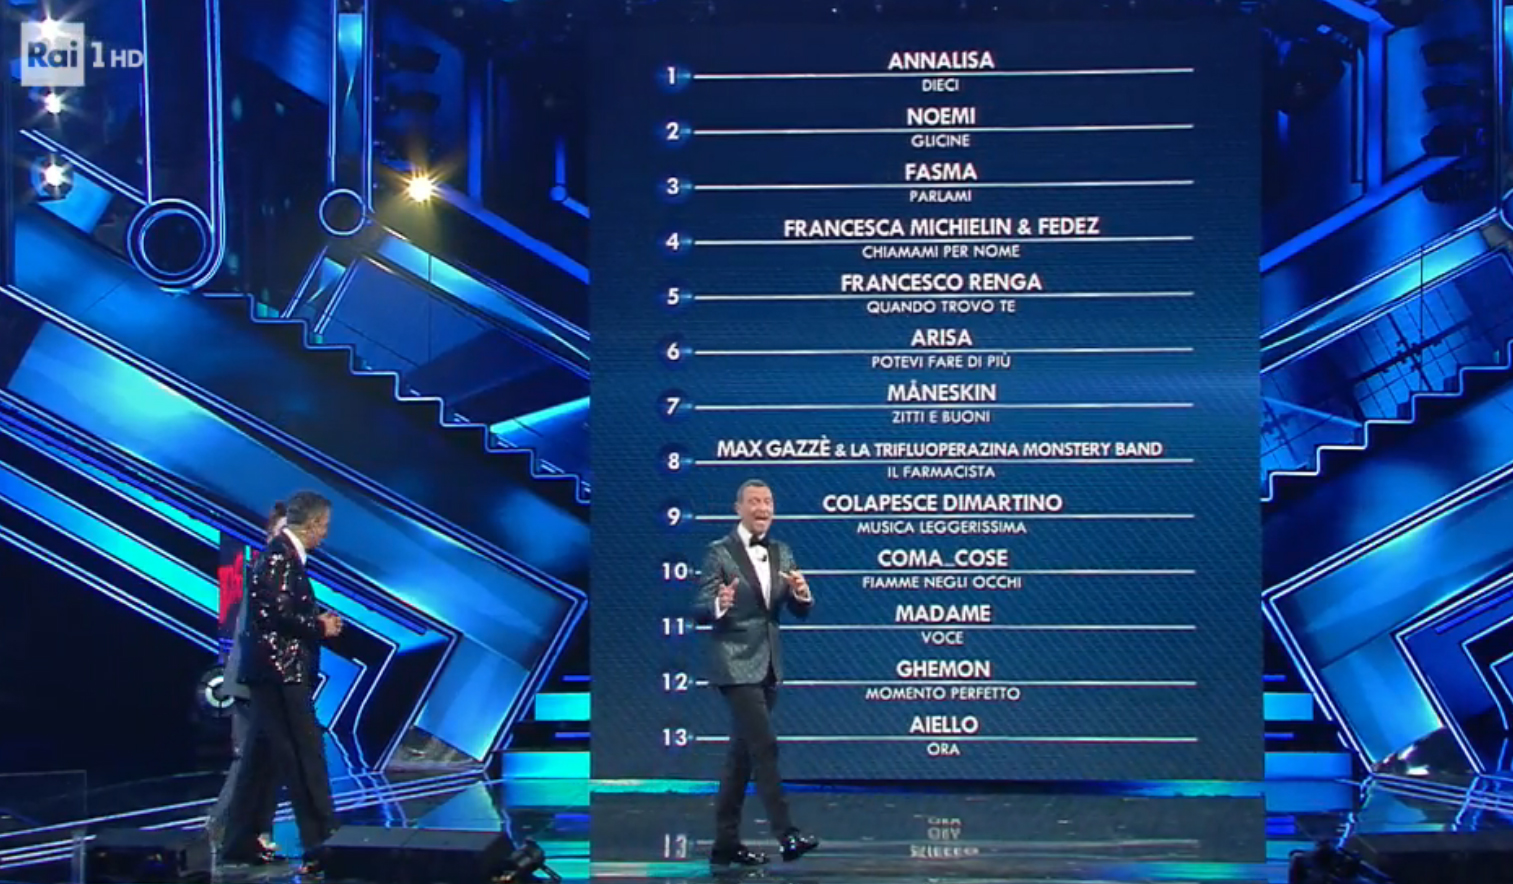 La classifica provvisoria al termine della prima serata di Sanremo 2021 [credit: RaiPlay]